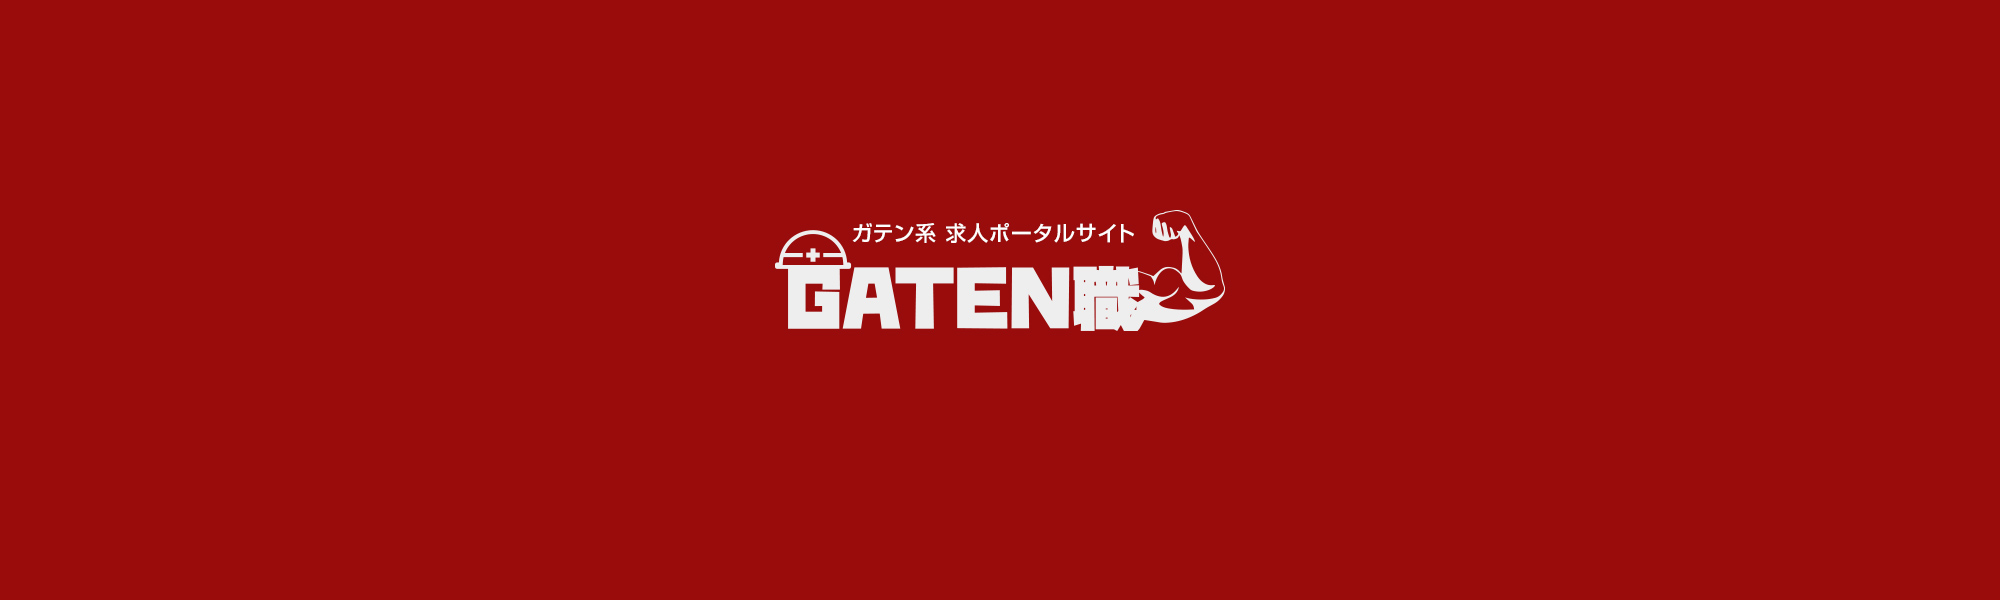 gtn_banner